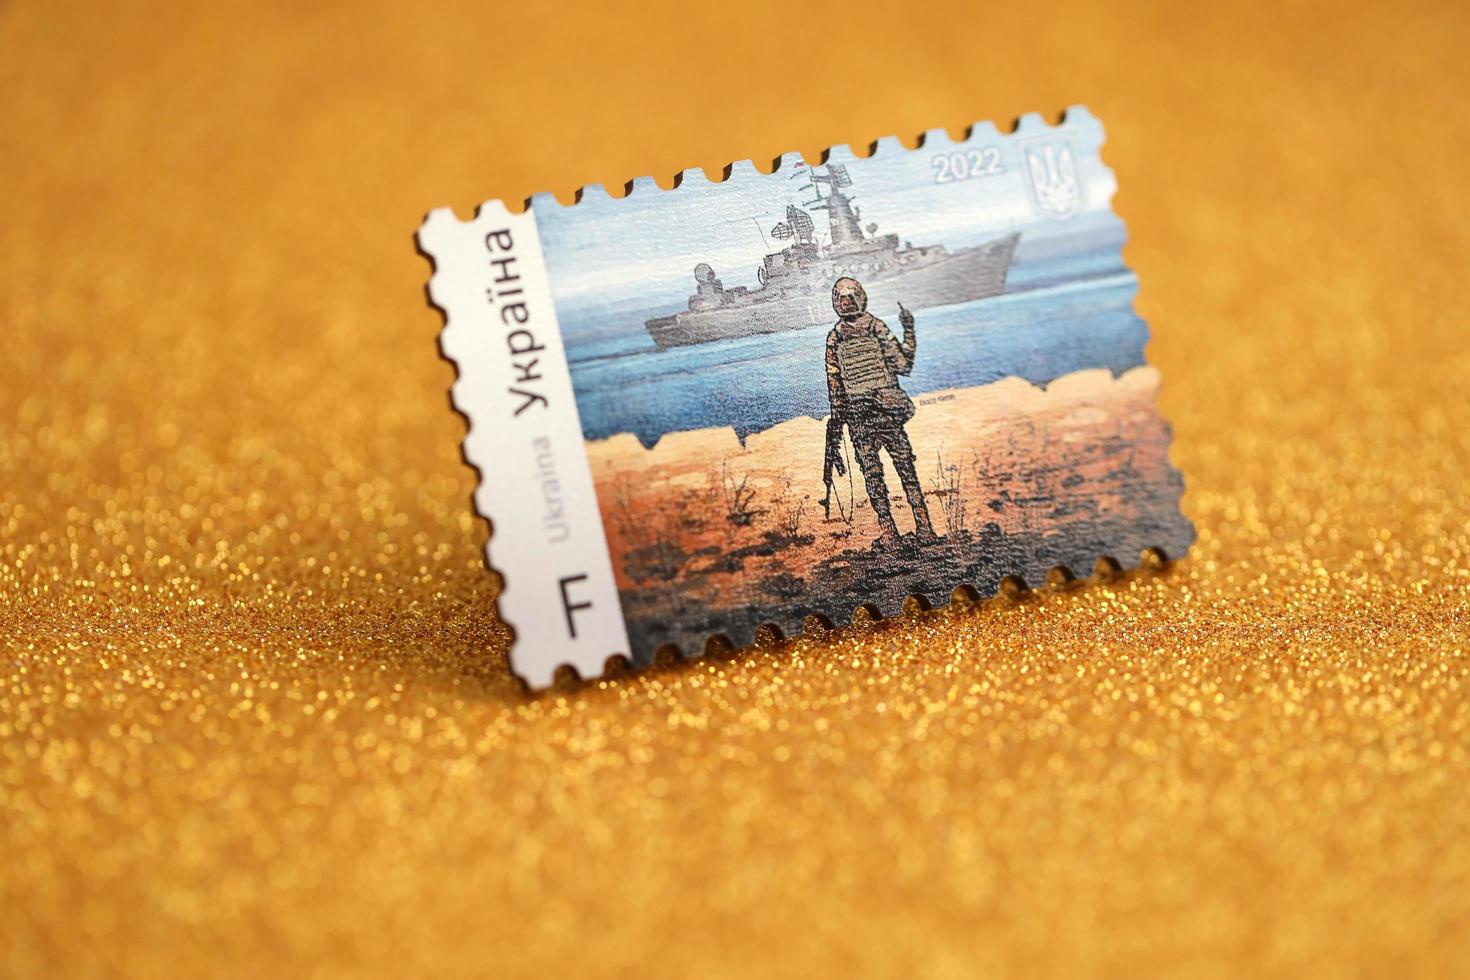 ternopil, ukraine - 2. september 2022 berühmter ukrainischer poststempel mit russischem kriegsschiff und ukrainischem soldaten als souvenir aus holz auf goldenem glitzerhintergrund foto